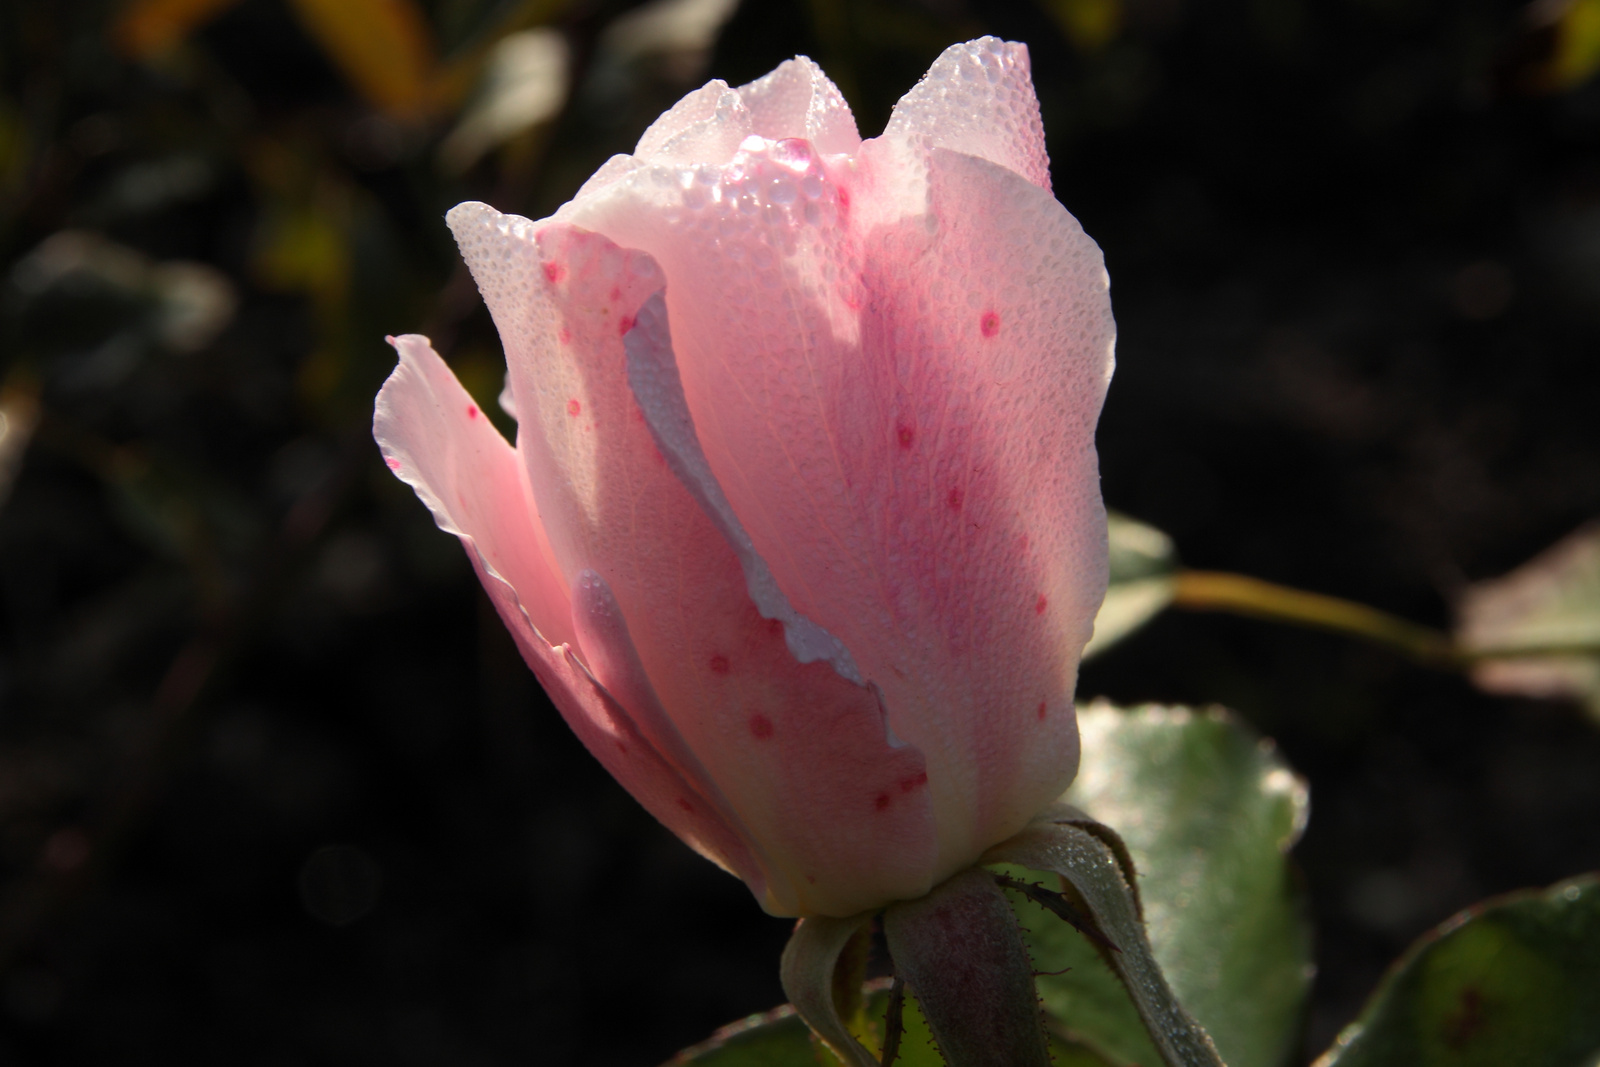 Novemberi rózsa